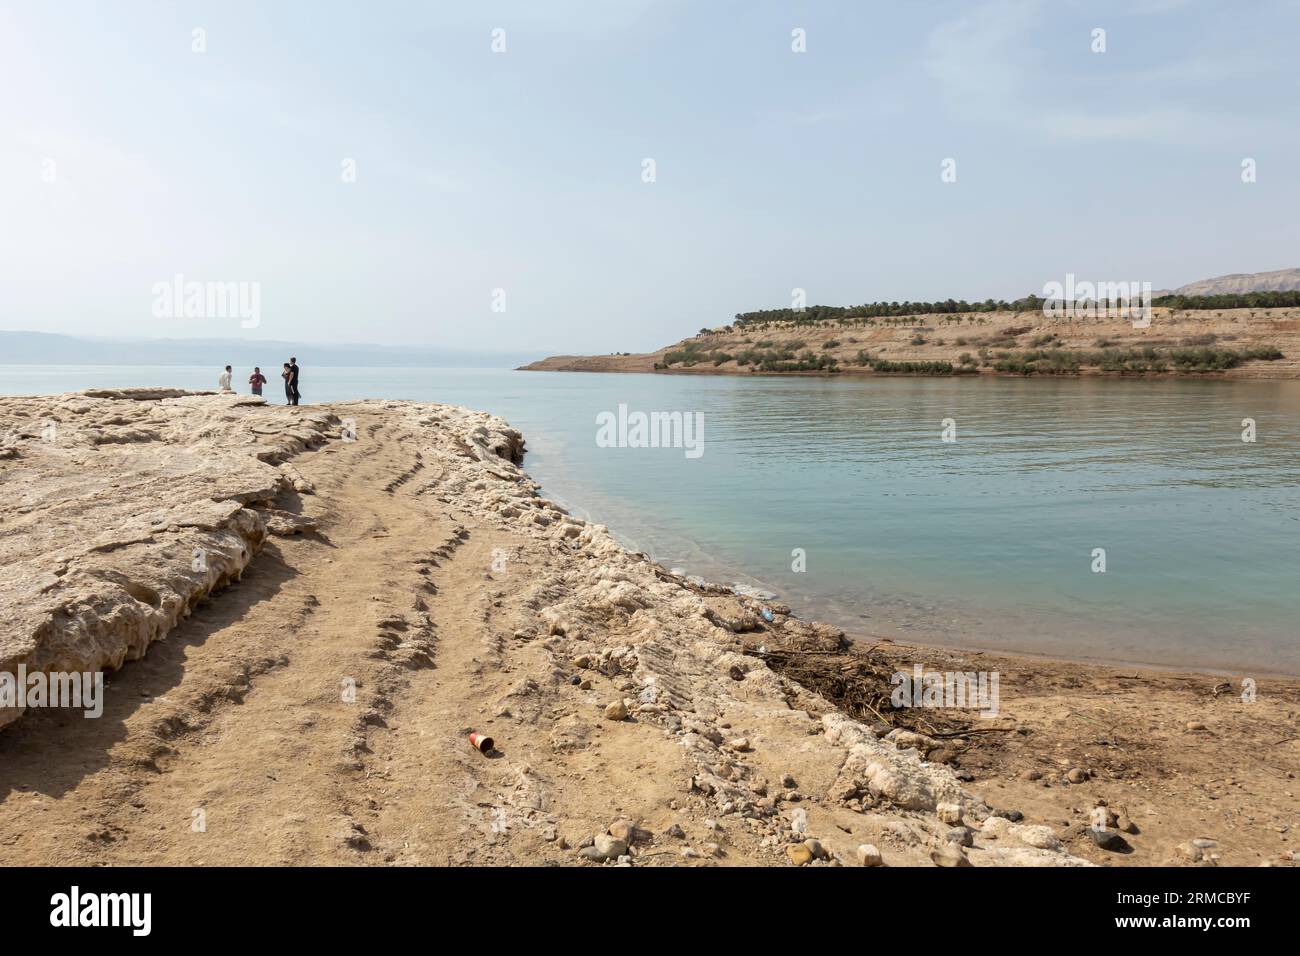 Touristes aux roches salées sttraction touristique sur le rivage de la mer Morte en Jordanie Banque D'Images